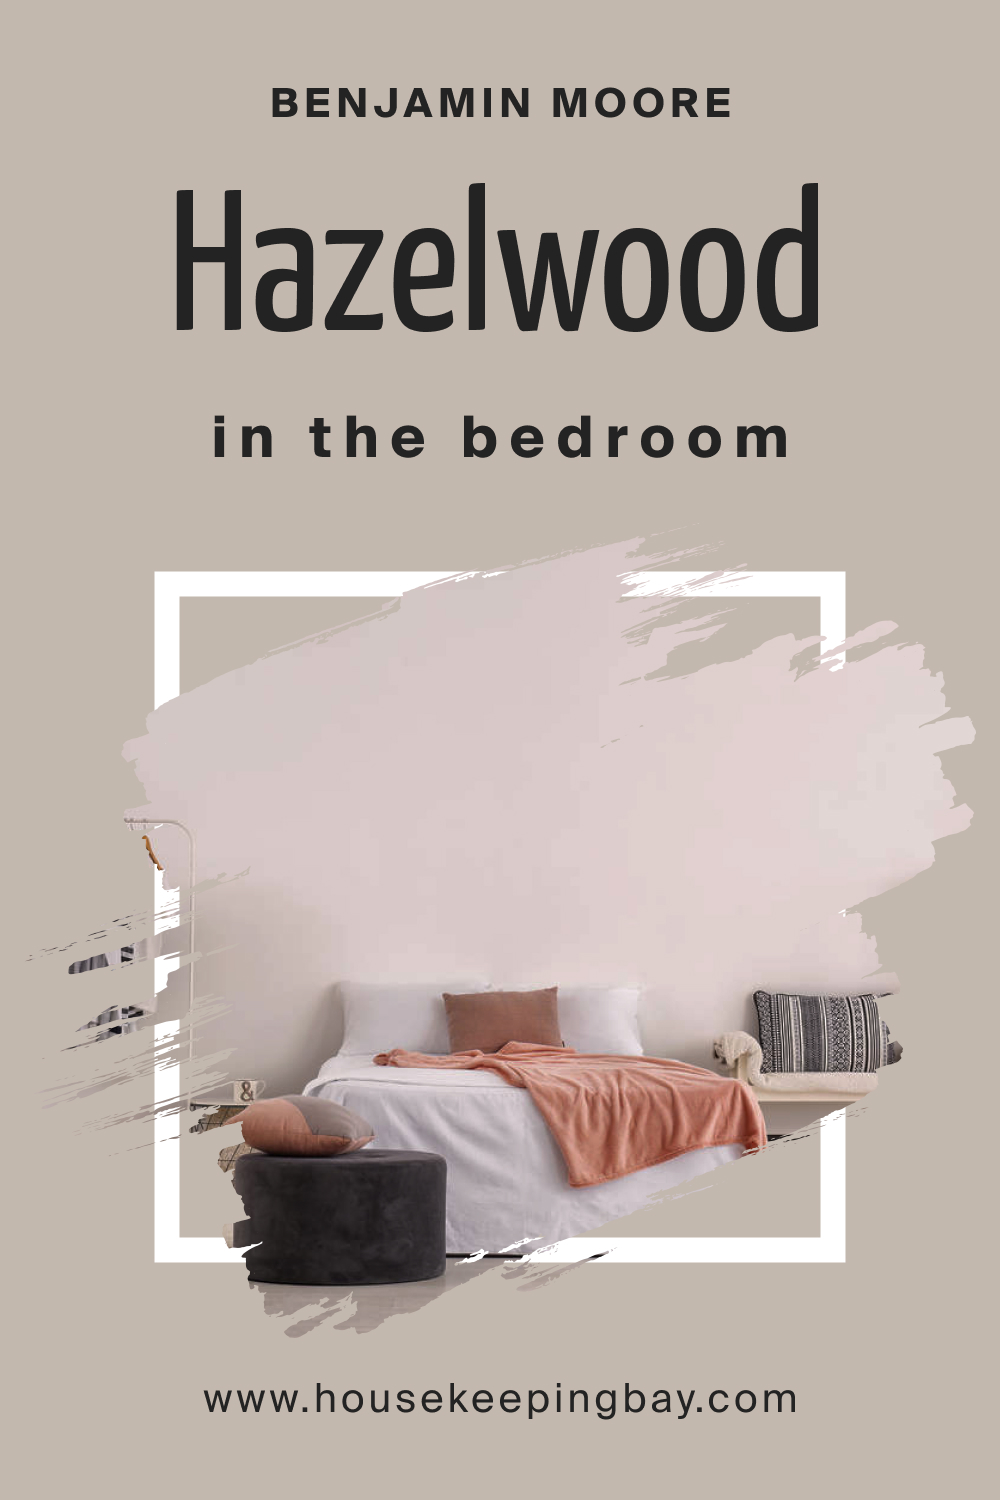 Benjamin Moore. BM Hazelwood 1005 for the Bedroom